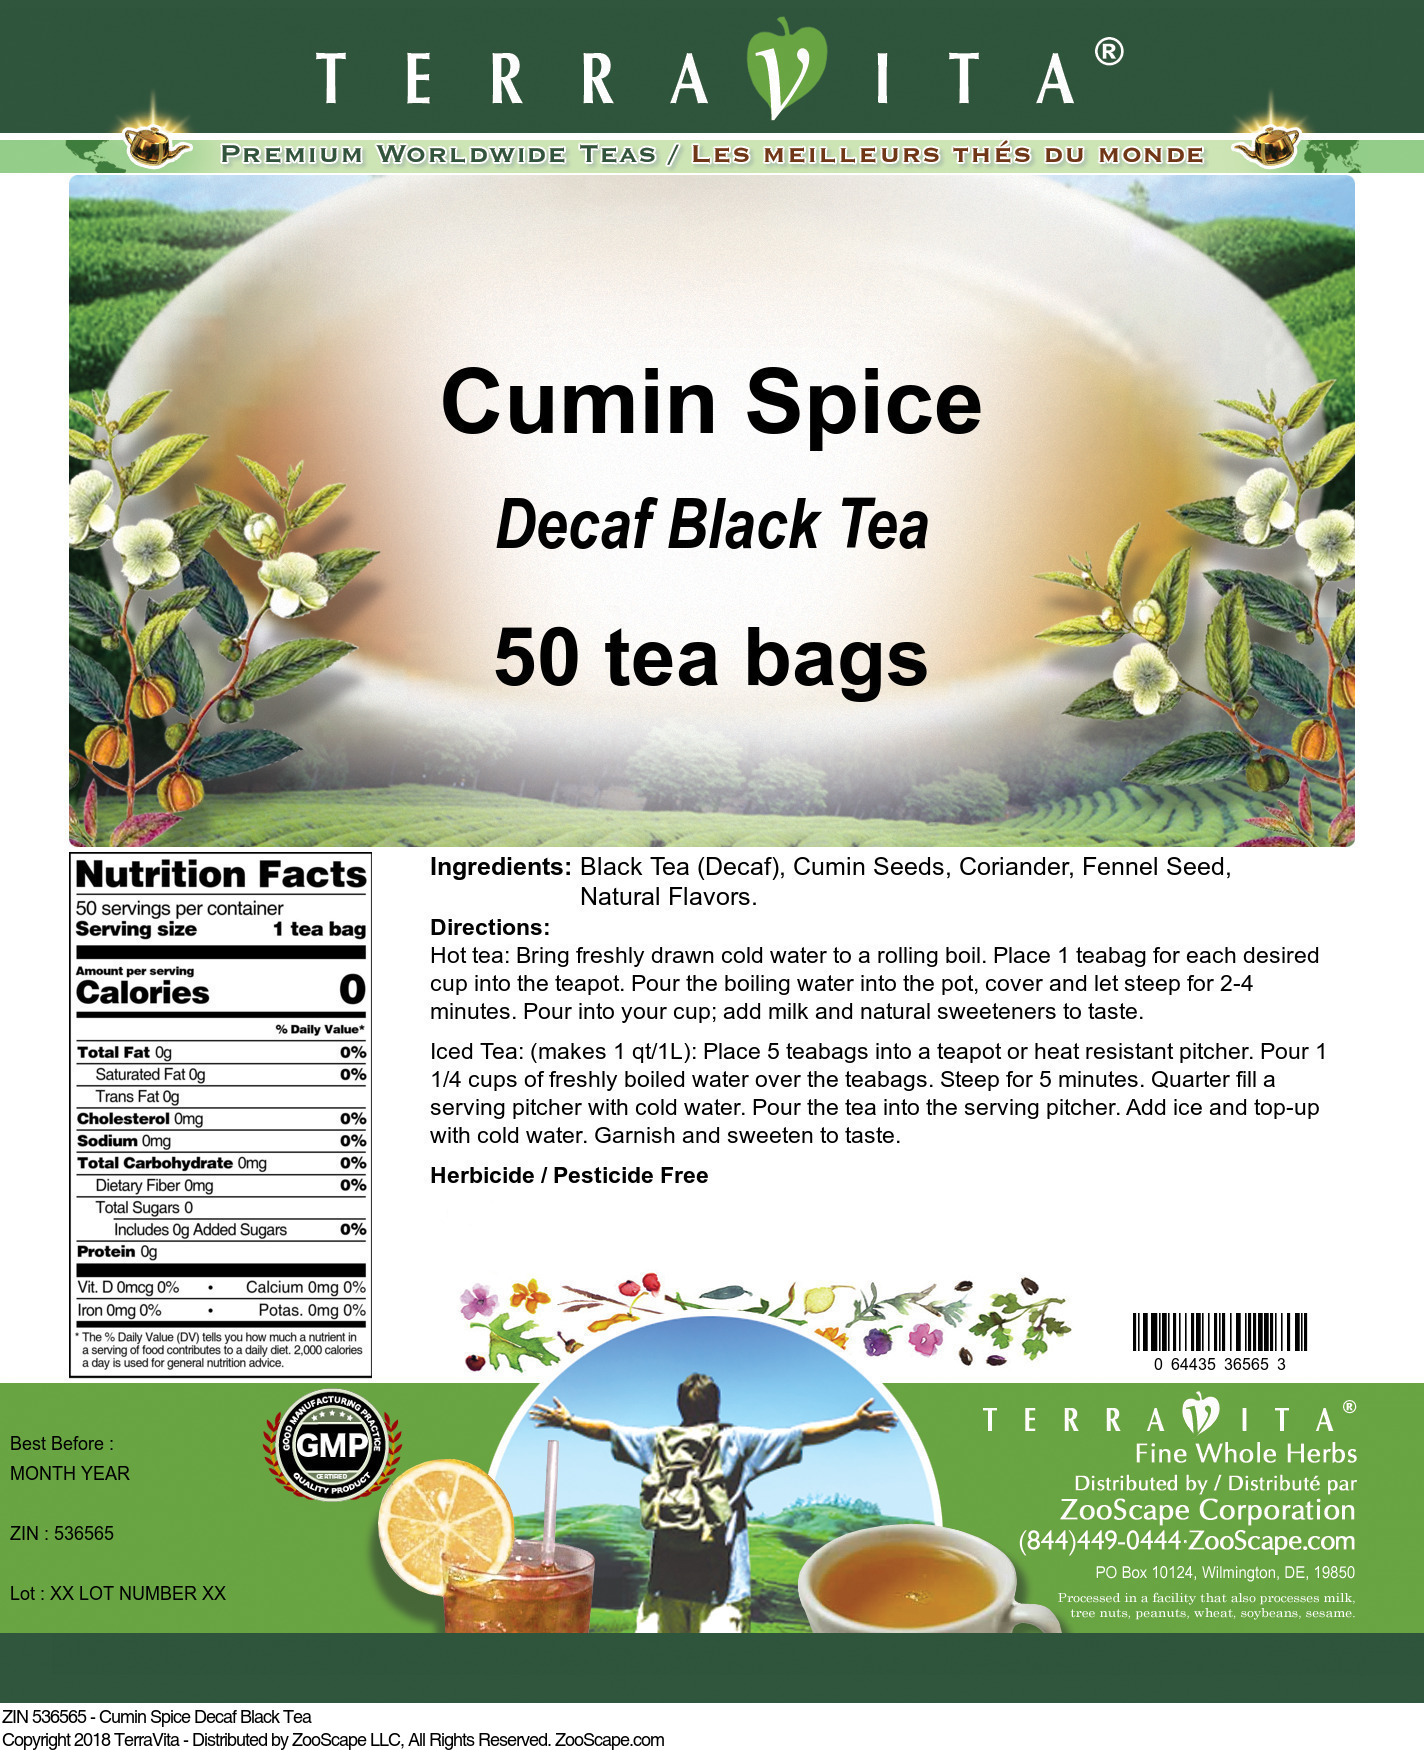 Cumin Spice Decaf Black Tea - Label